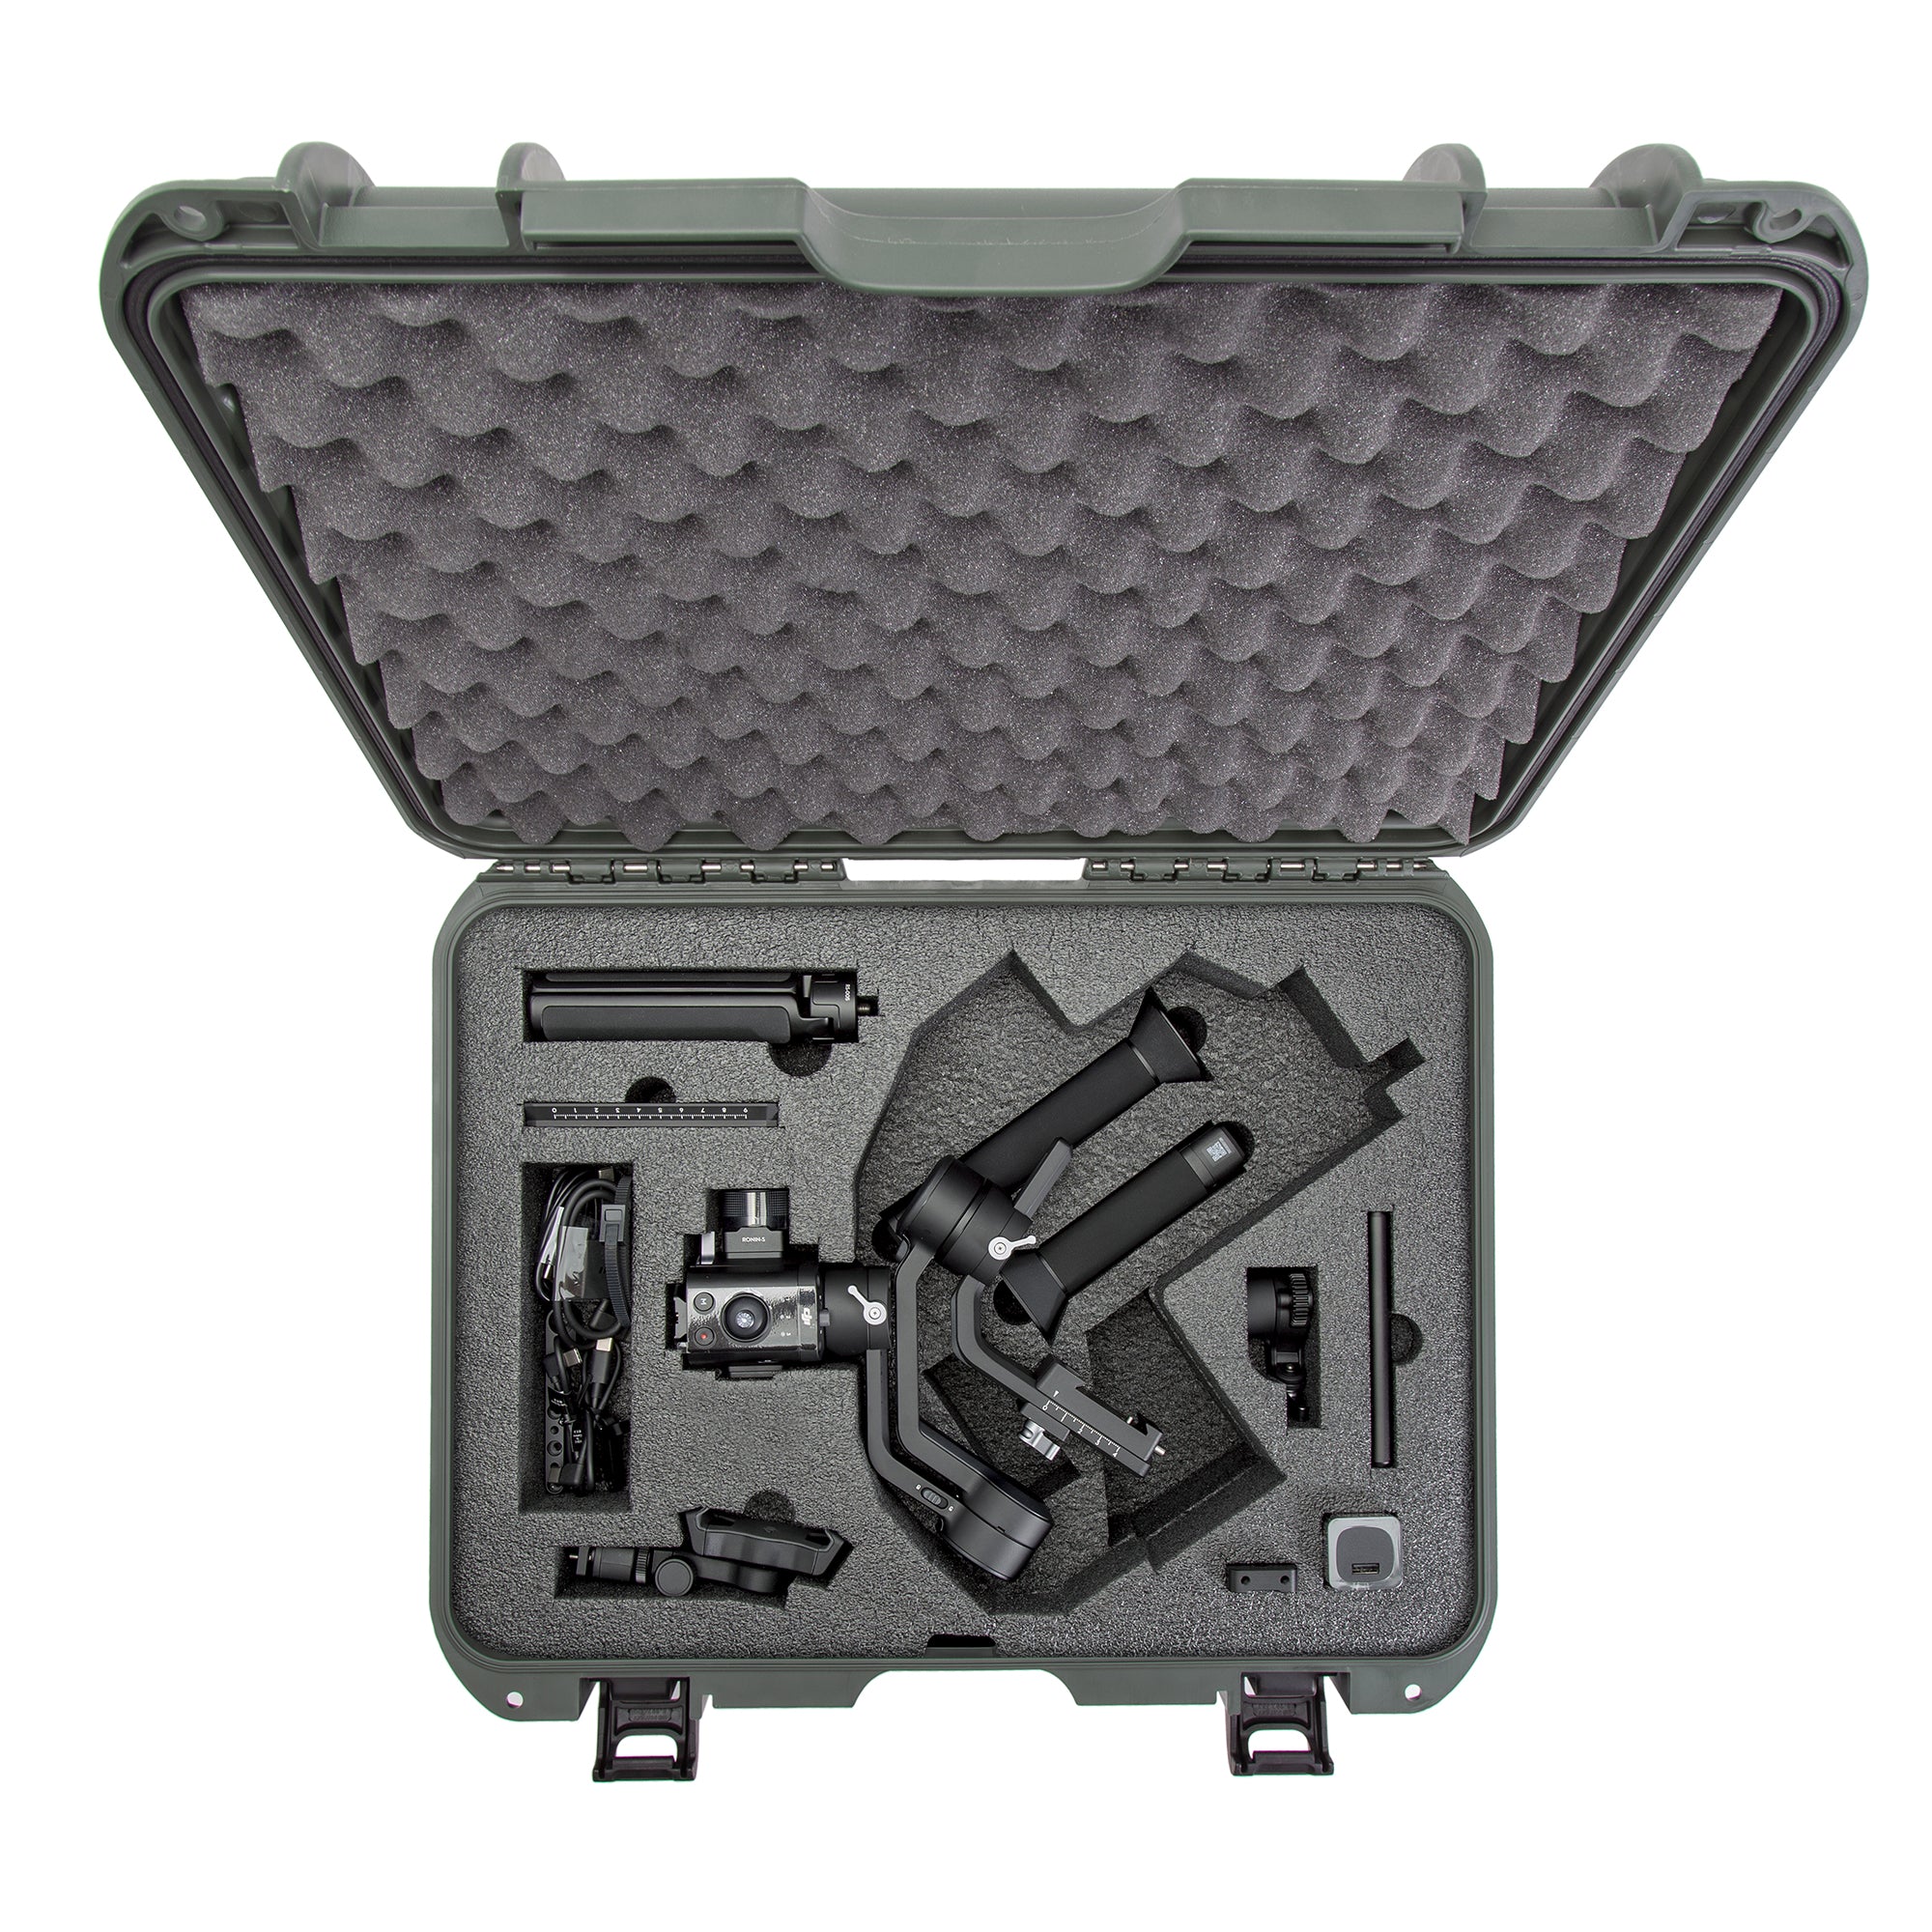 Nanuk 930 Waterproof Hard Case with Custom Foam Insert for DJI Ronin-SC - Olive